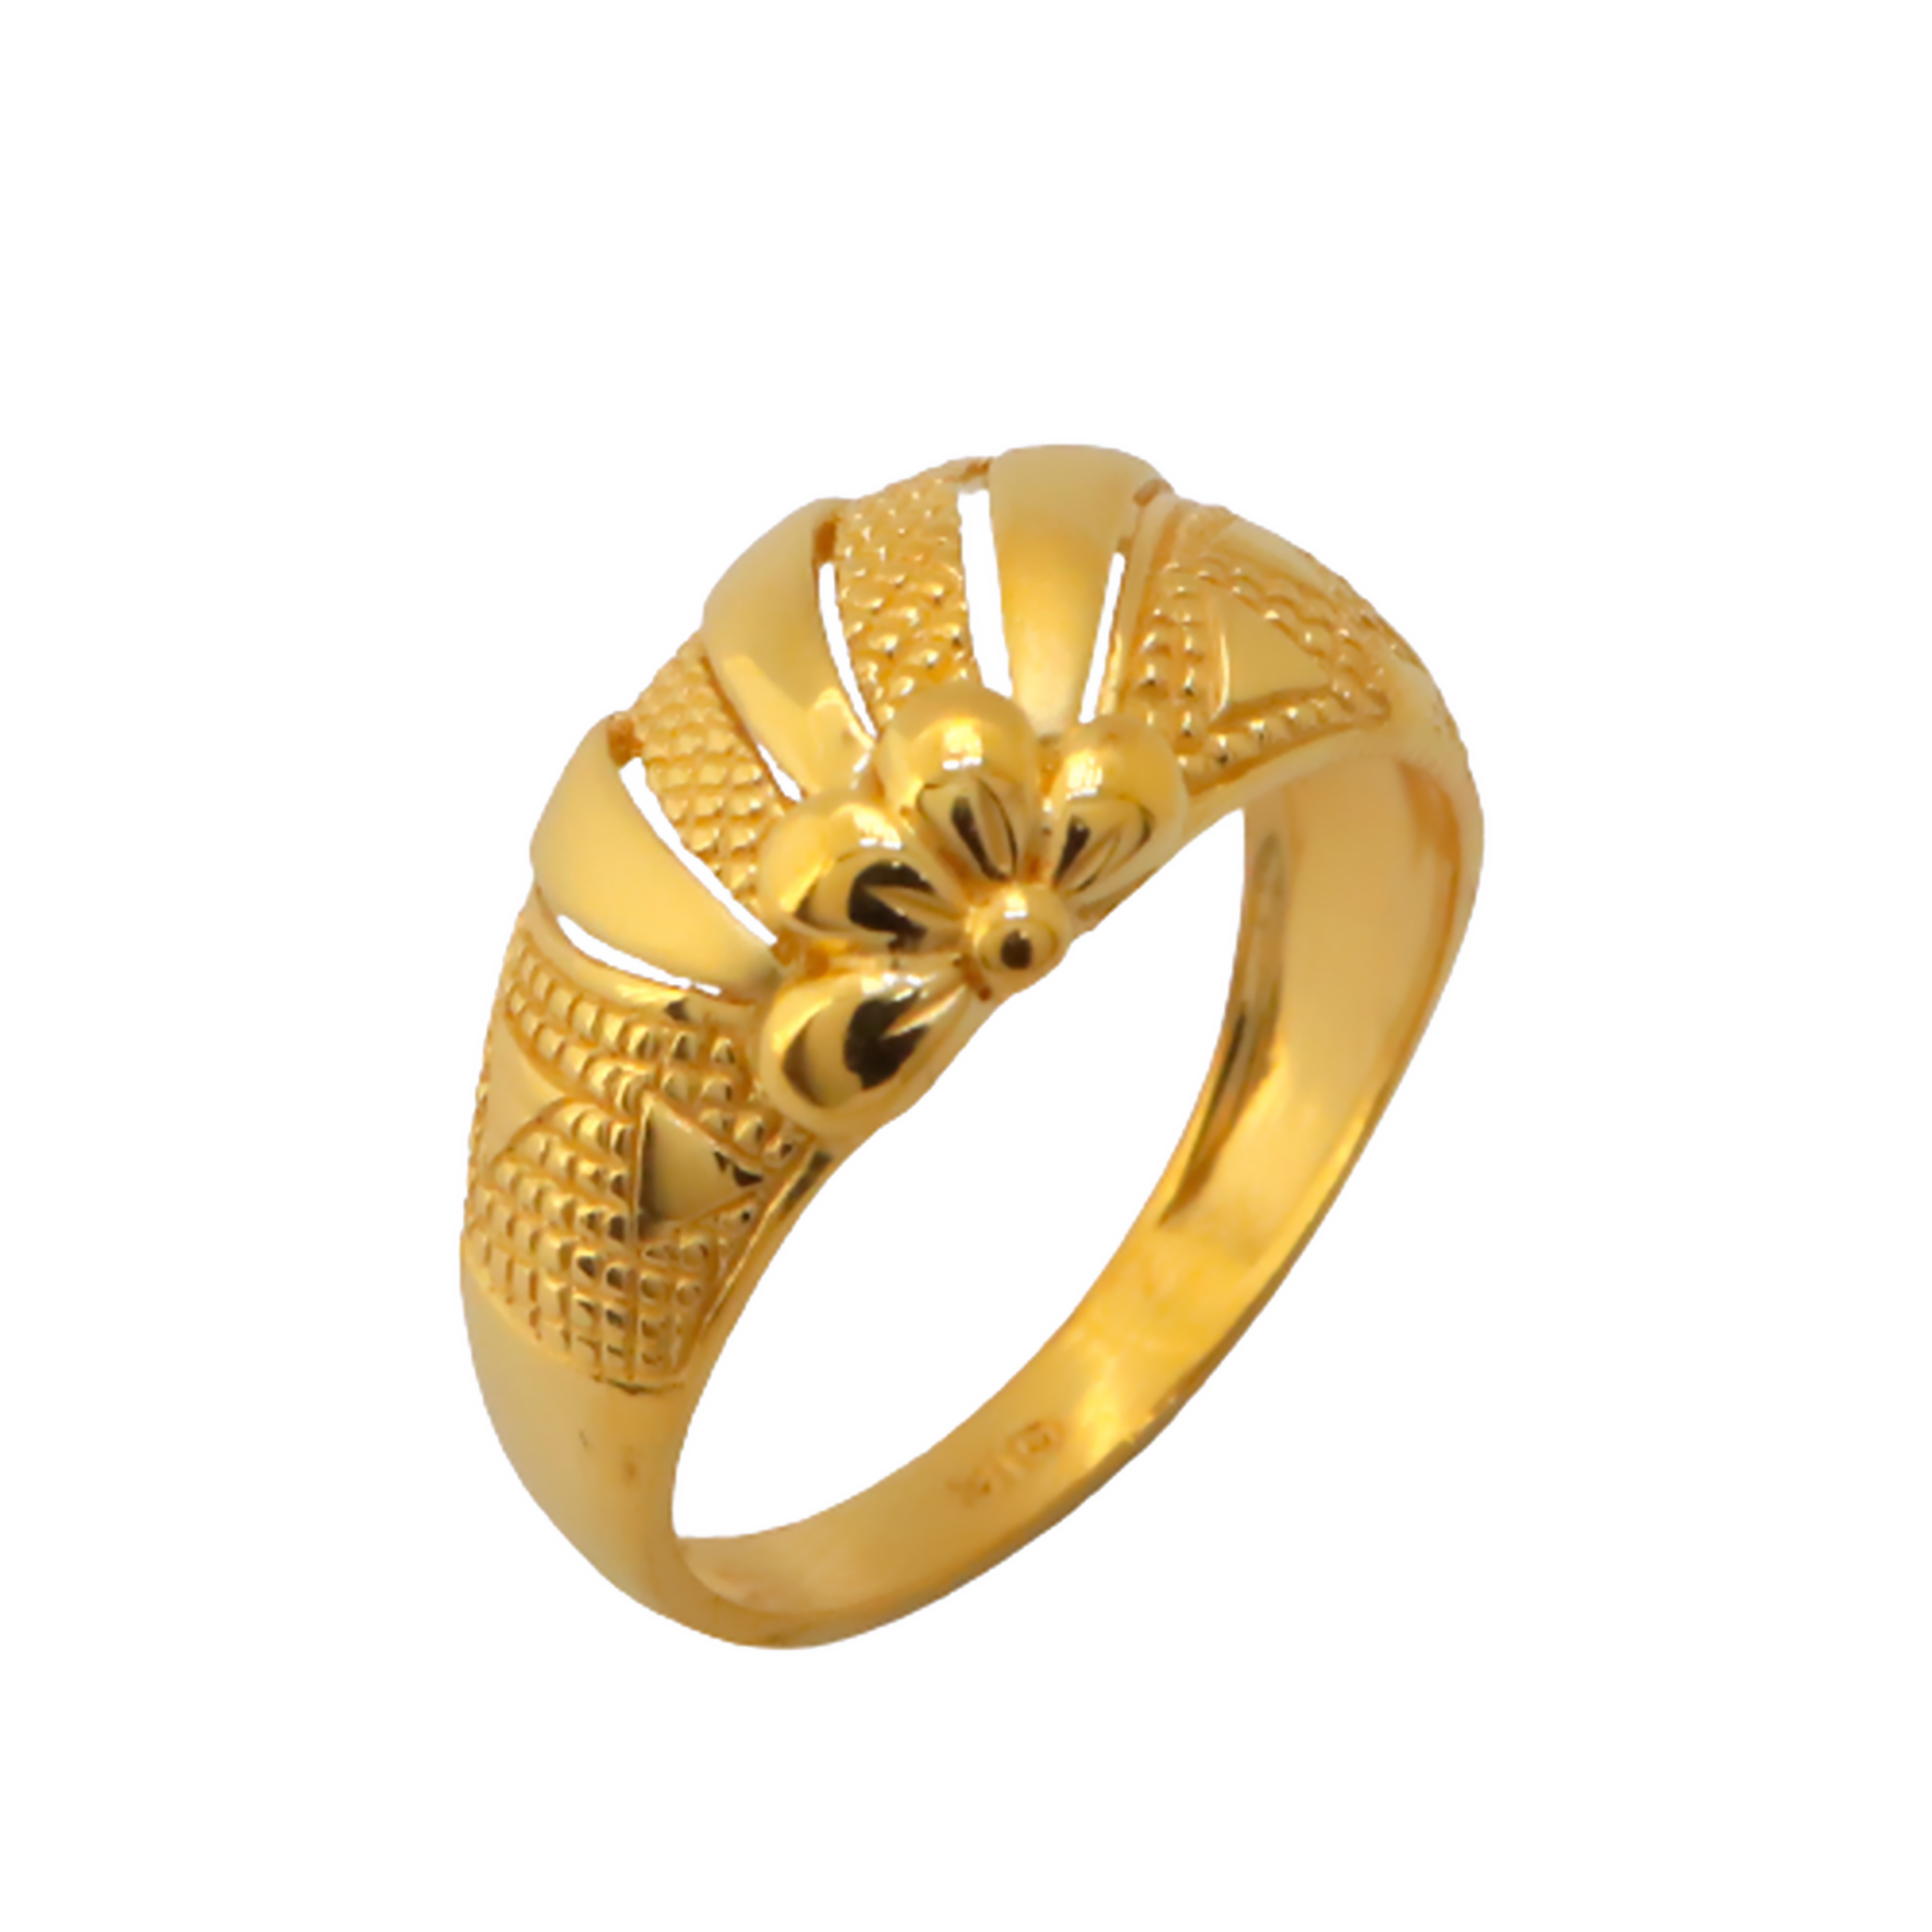 Flower 22k Gold Ring, K2357 - Etsy